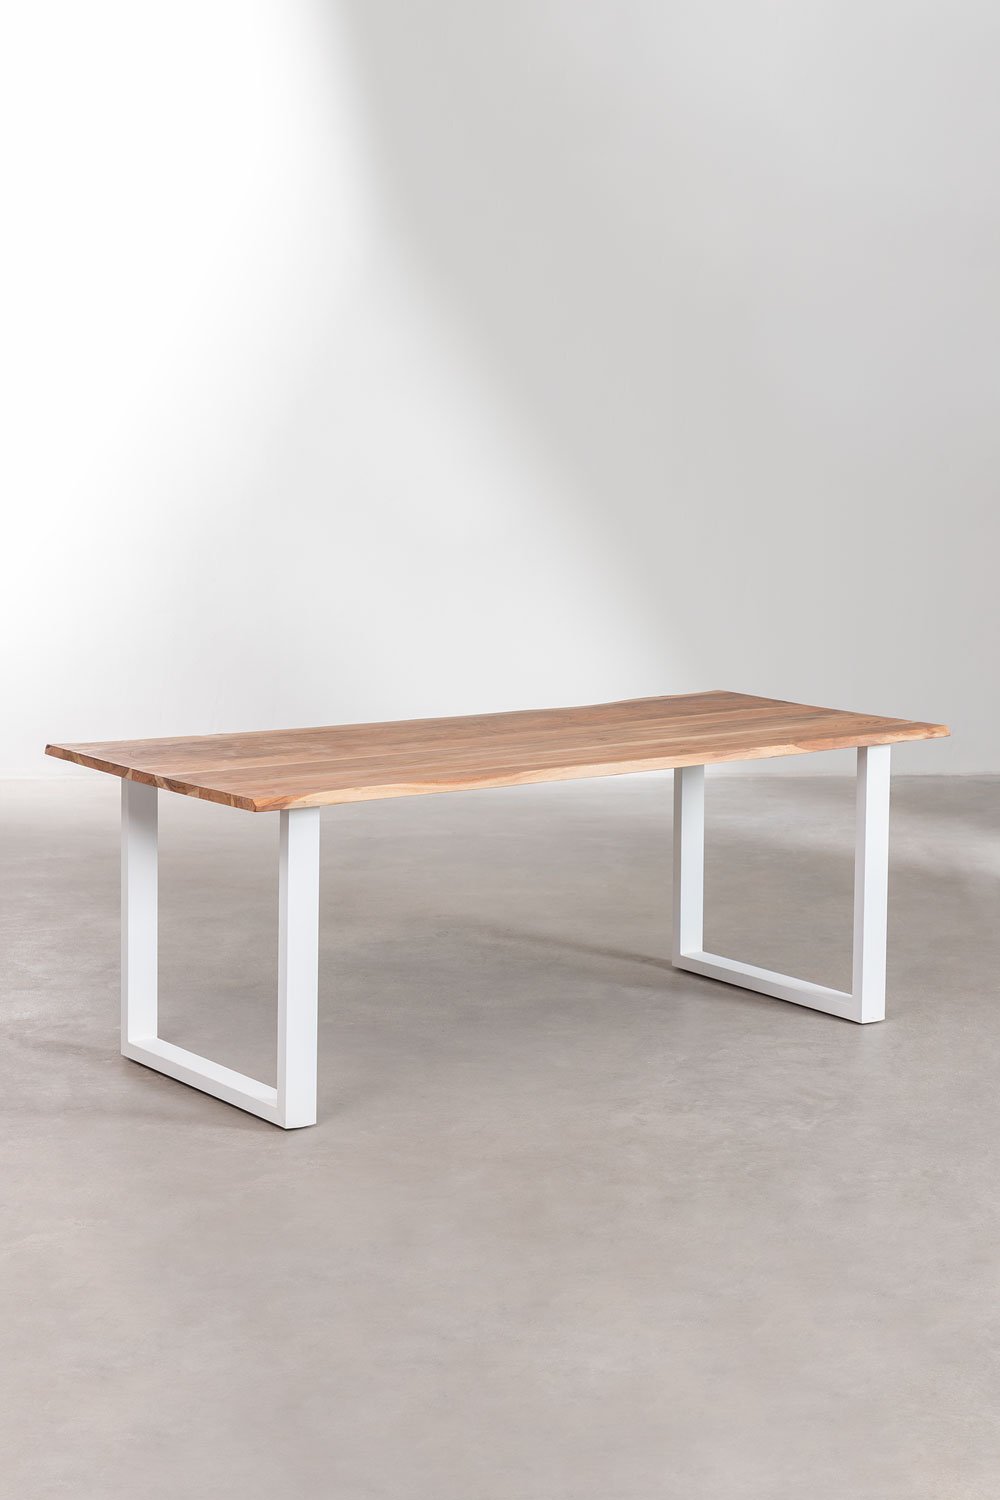 Prostokątny stół do jadalni Sami z drewna pochodzącego z recyklingu, obrazek w galerii 1